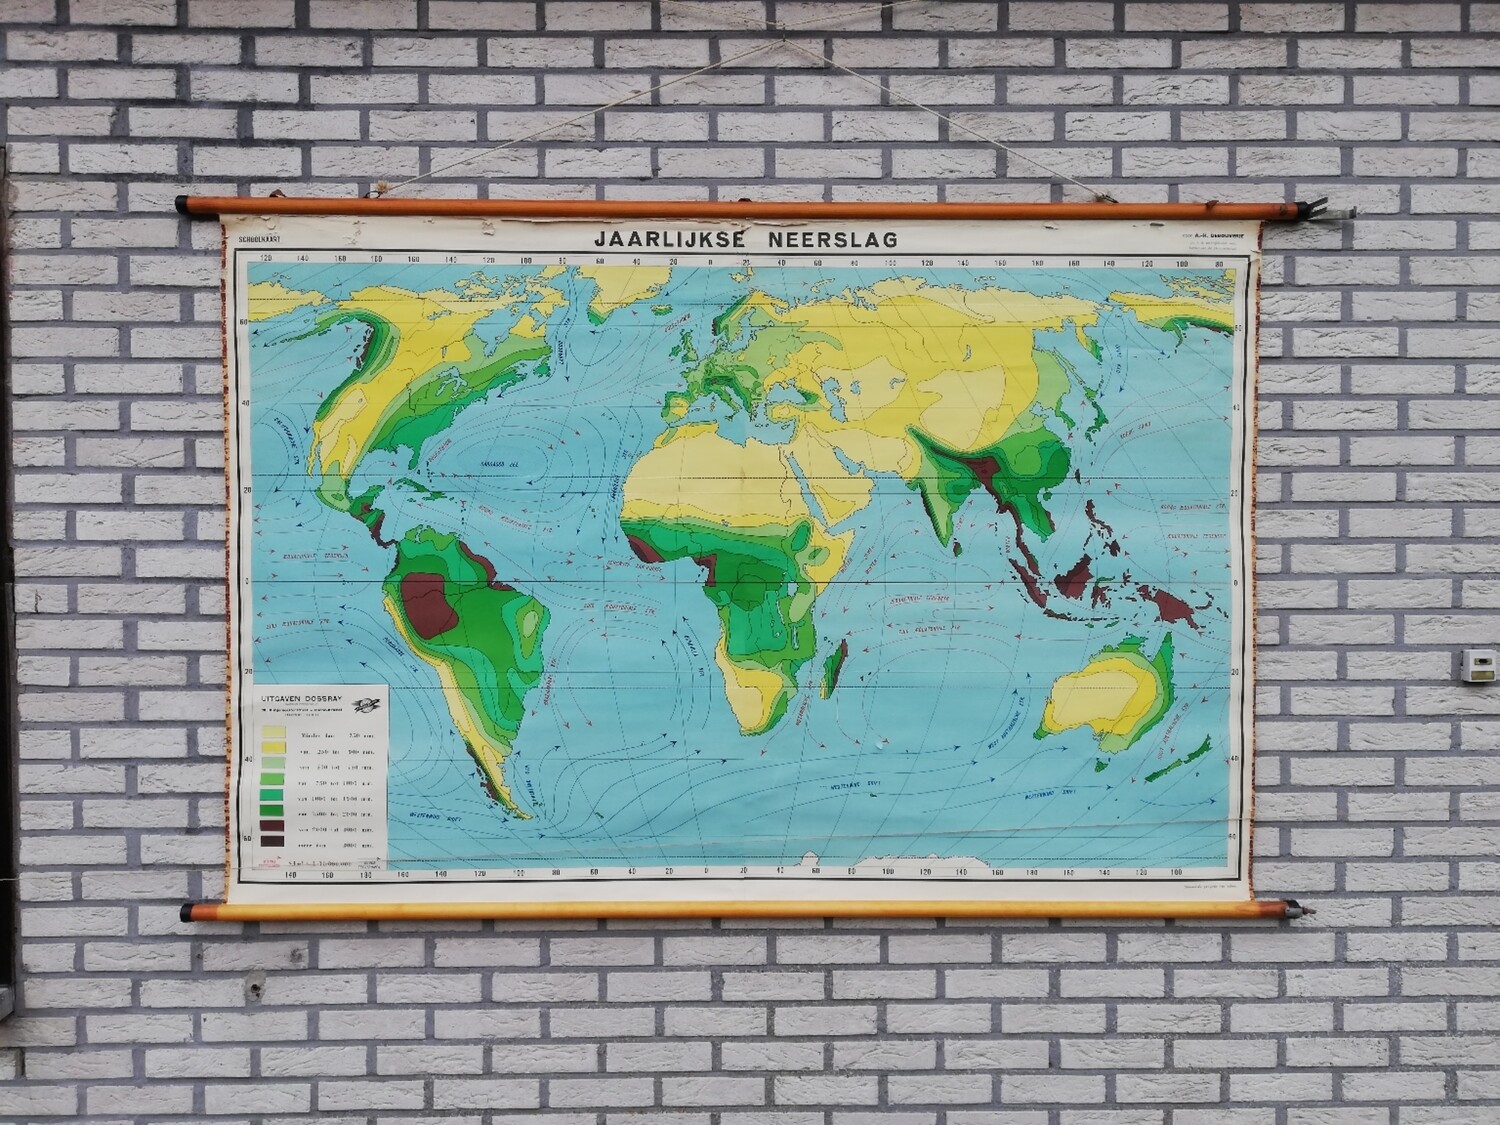 Schoolkaart - wereld / jaarlijkse neerslag